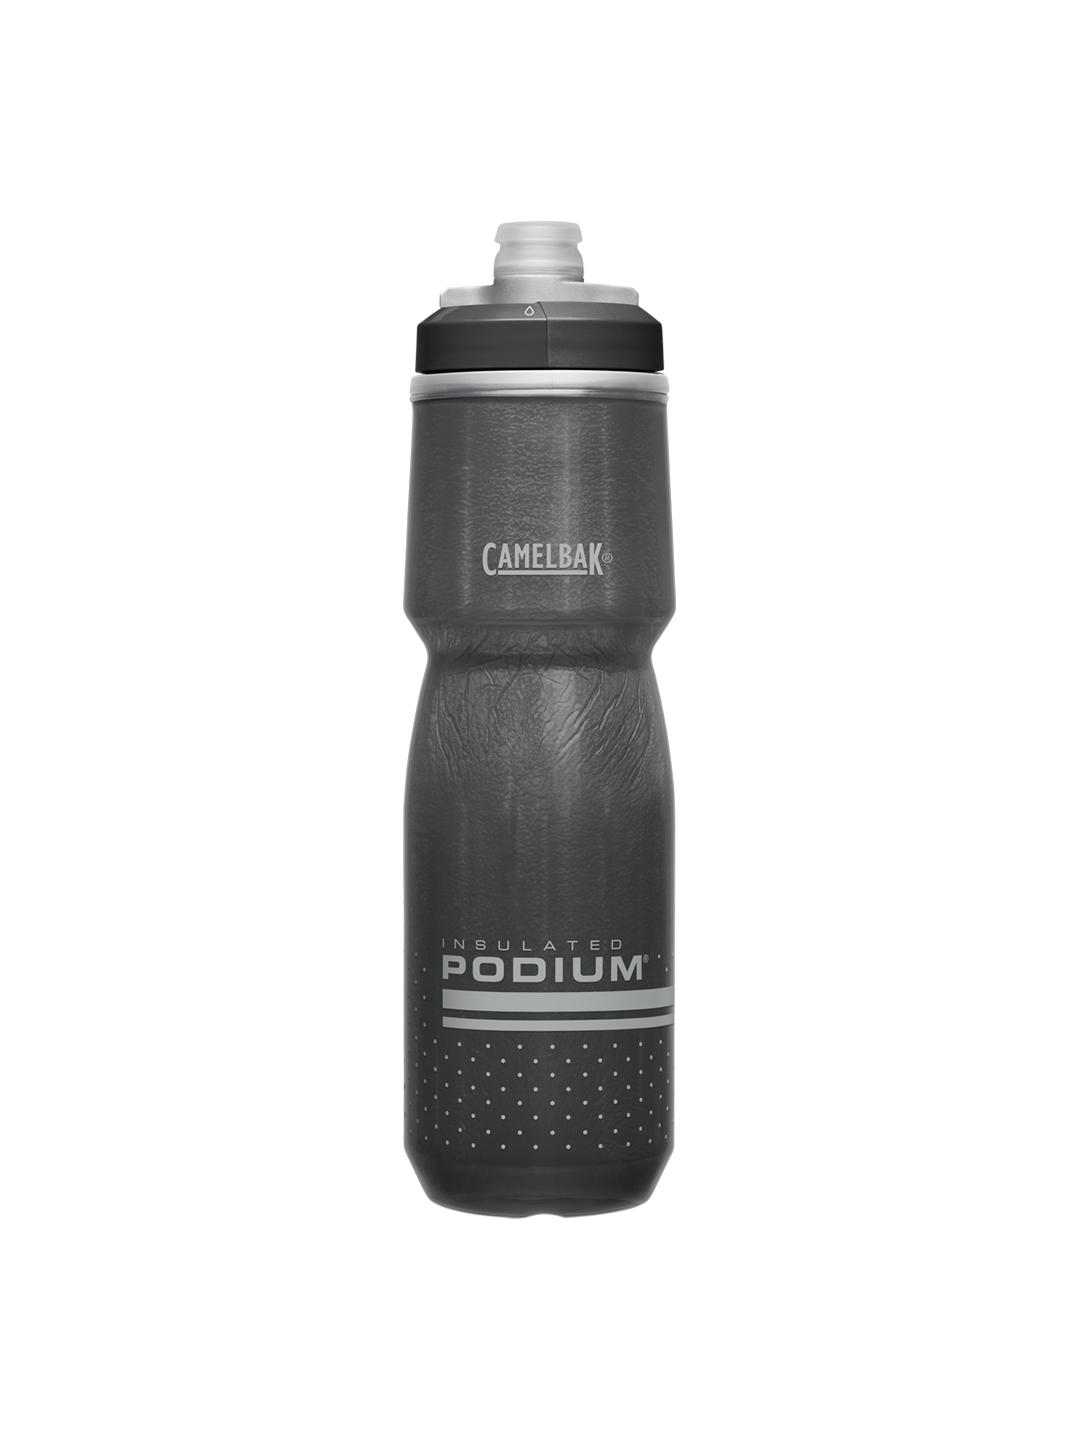 trek precaliber 24 water bottle holder